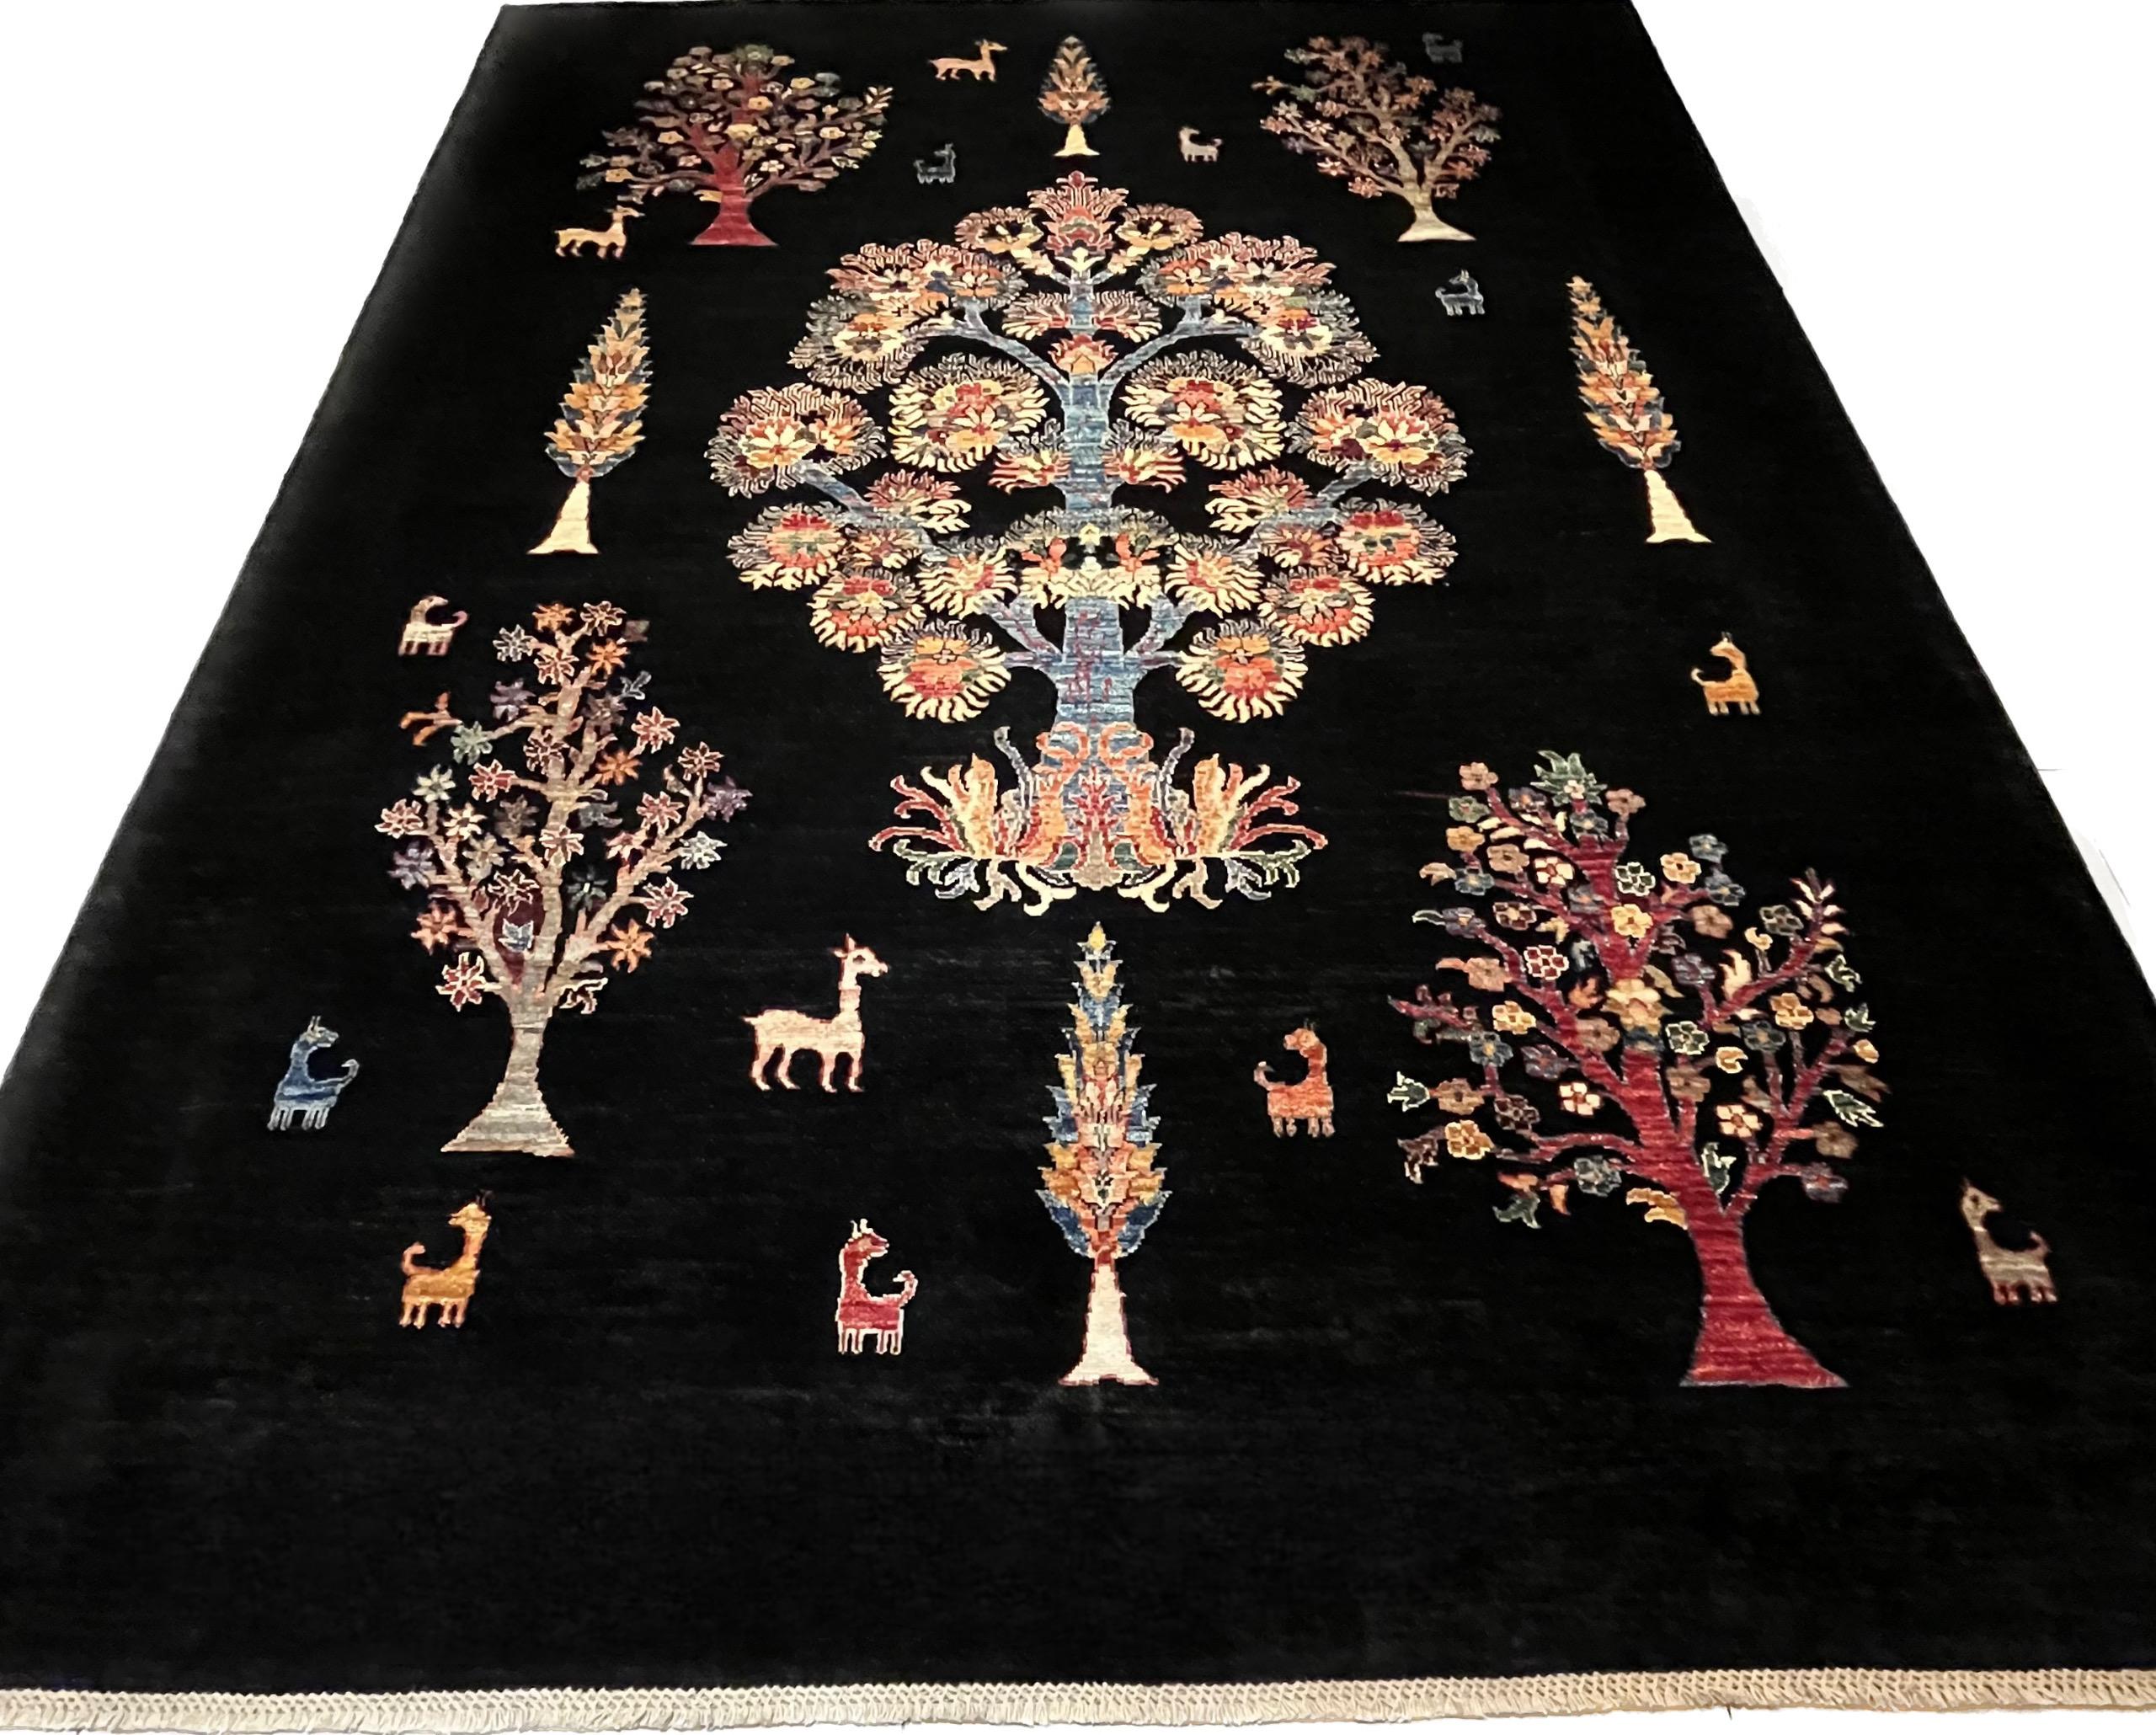 Gabbeh Loribaff Teppich 266x200 cm

Diese sehr schönen Teppiche werden von Nomaden aus den Provinzen Kaschkai und Loristan im Südwesten des Iran hergestellt.
Sie sind bekannt für ihr primitives und naives Design, wobei einige einen moderneren Stil